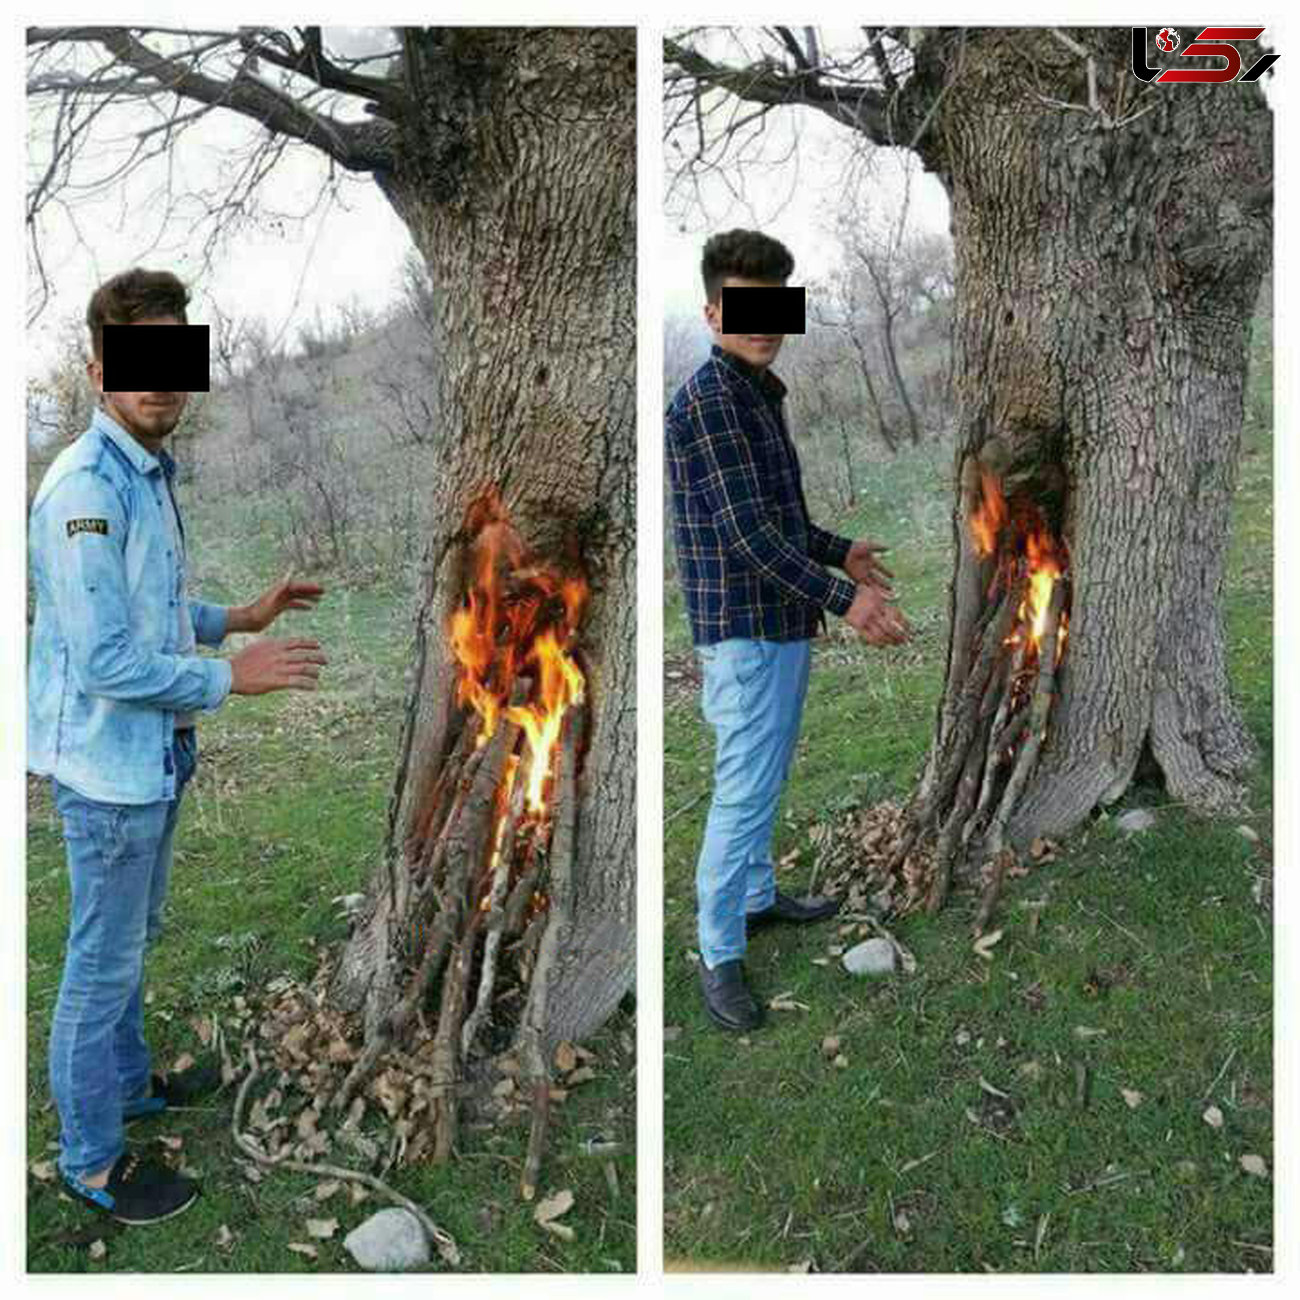 دستگیری 2 جوان که کثیف ترین عکس یادگاری را در جنگل مازندران گرفته بودند+تصاویر